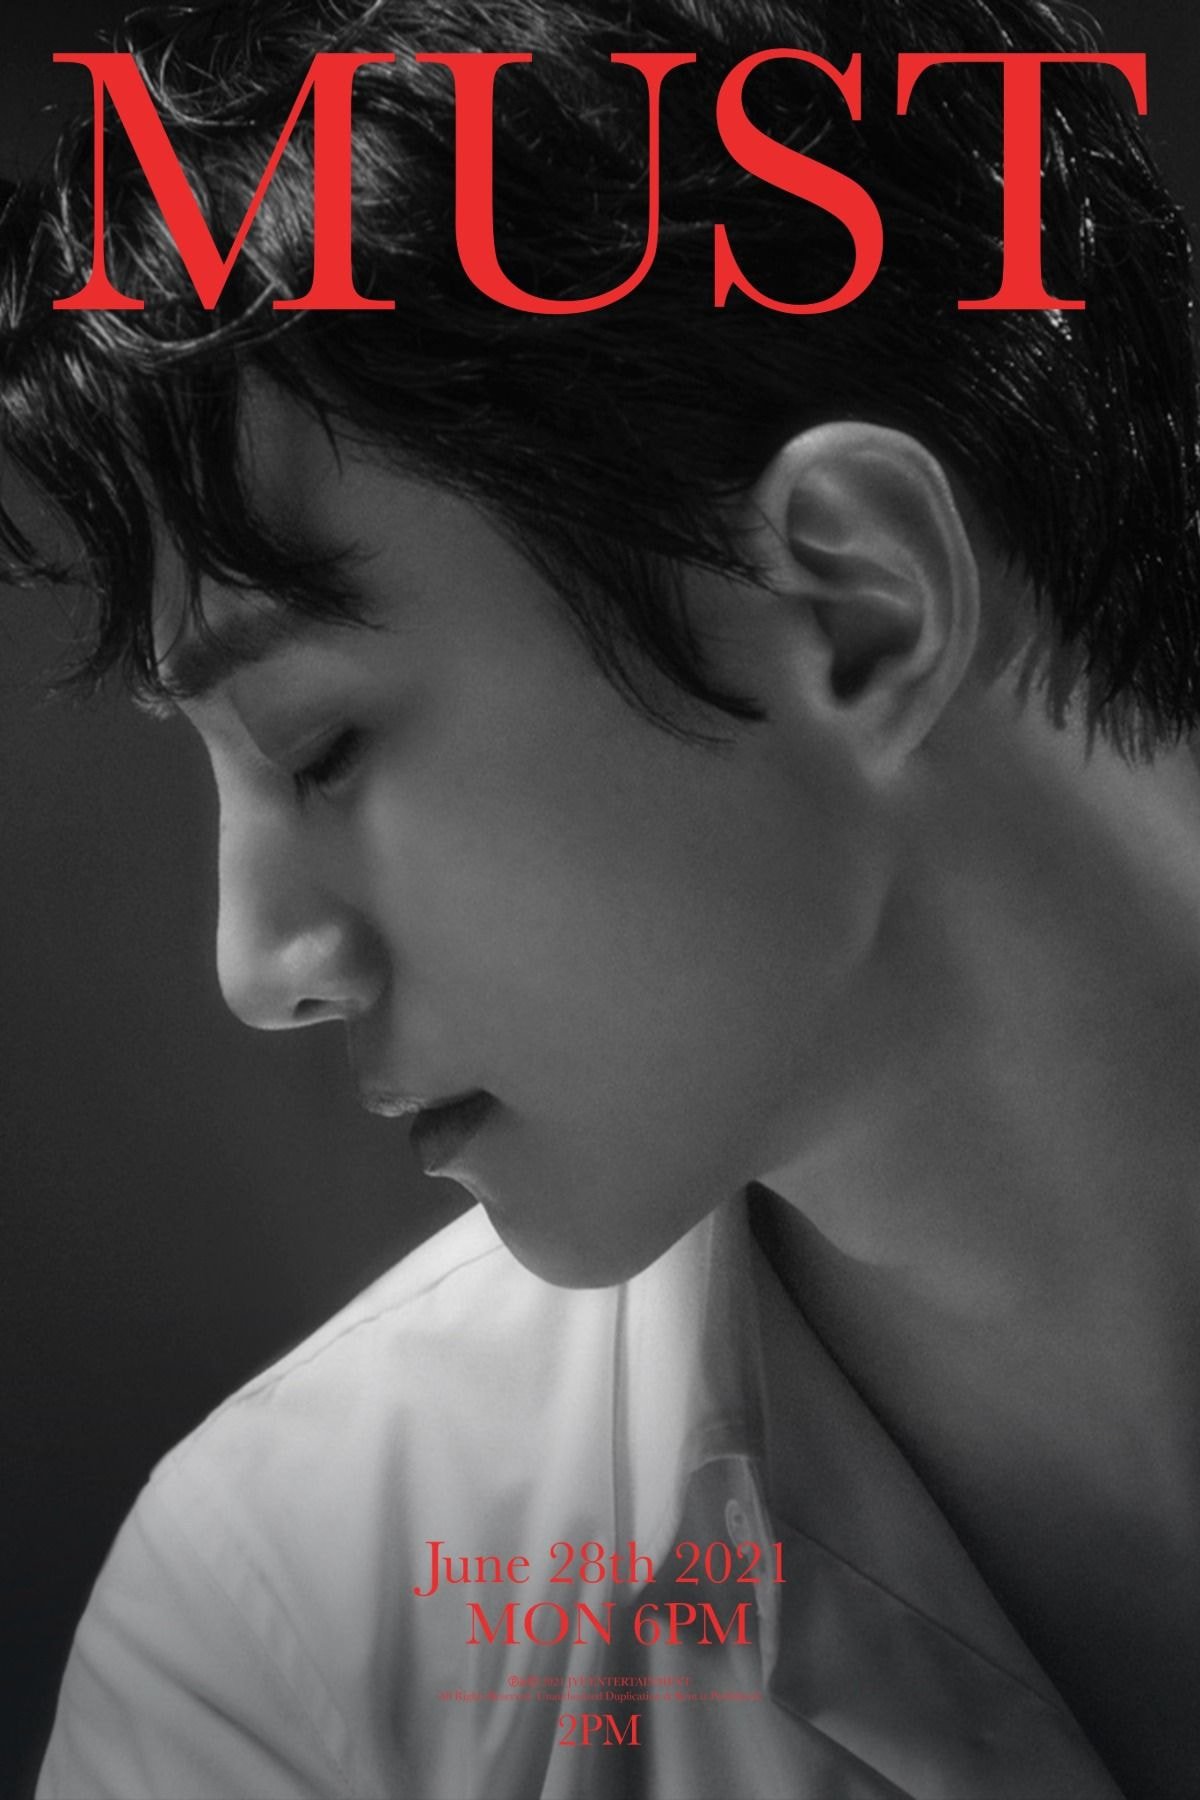 2PM 7th Album Trailer Poster 닉쿤, 준케이,준호